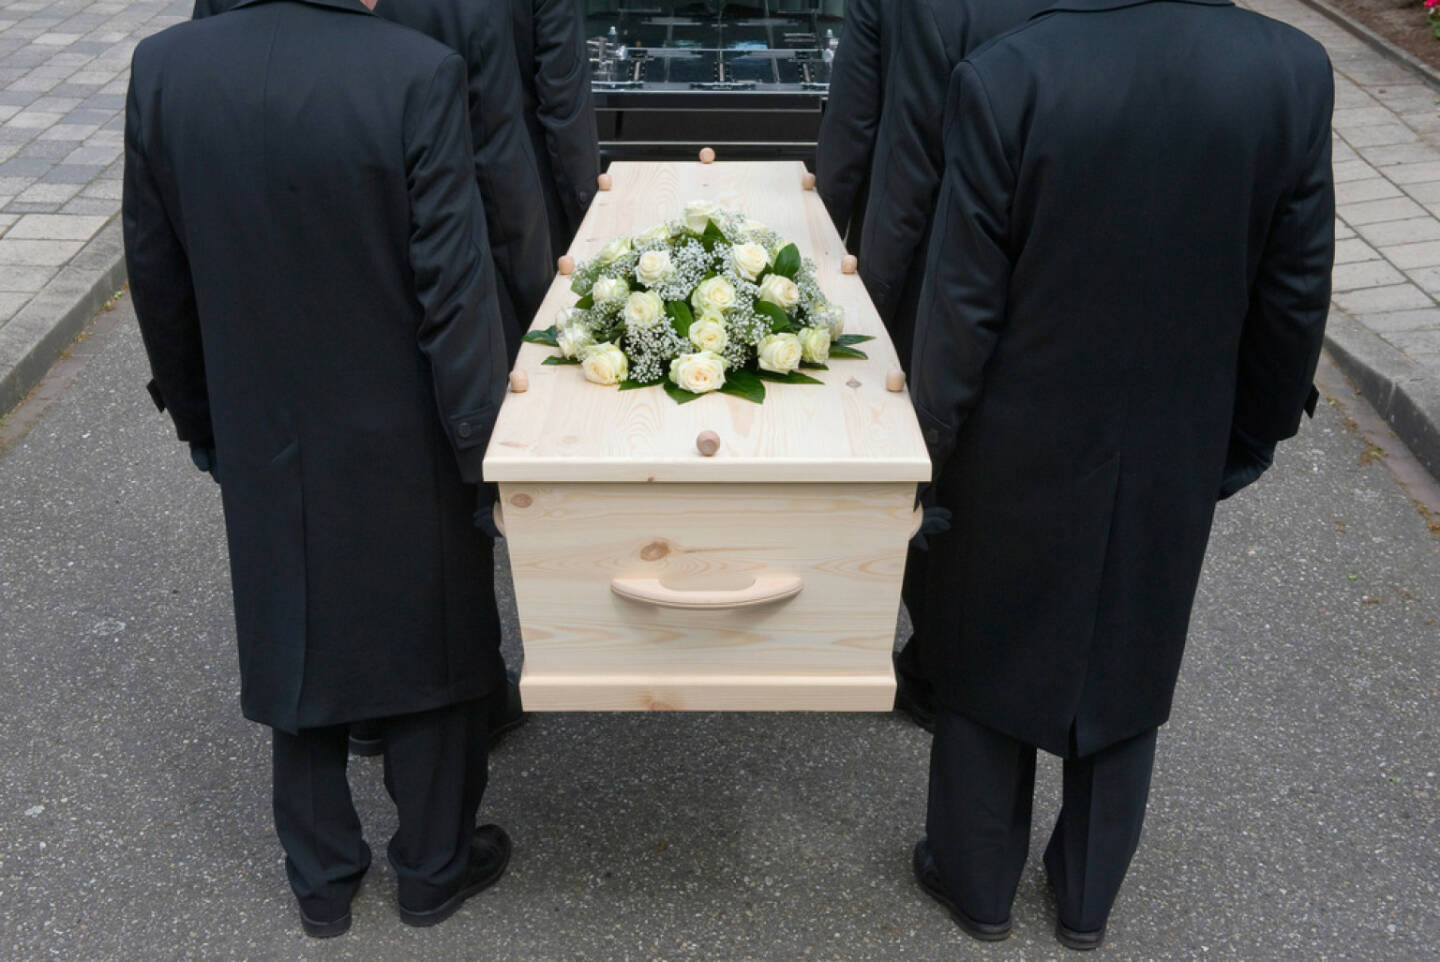 Begräbnis, Trauer, tragen, zu Grabe tragen, Grab, Friedhof, Leid, Tod, tot, Schmerz, Leid, http://www.shutterstock.com/de/pic-144558722/stock-photo-bearers-a-carrying-a-coffin-into-a-car.html